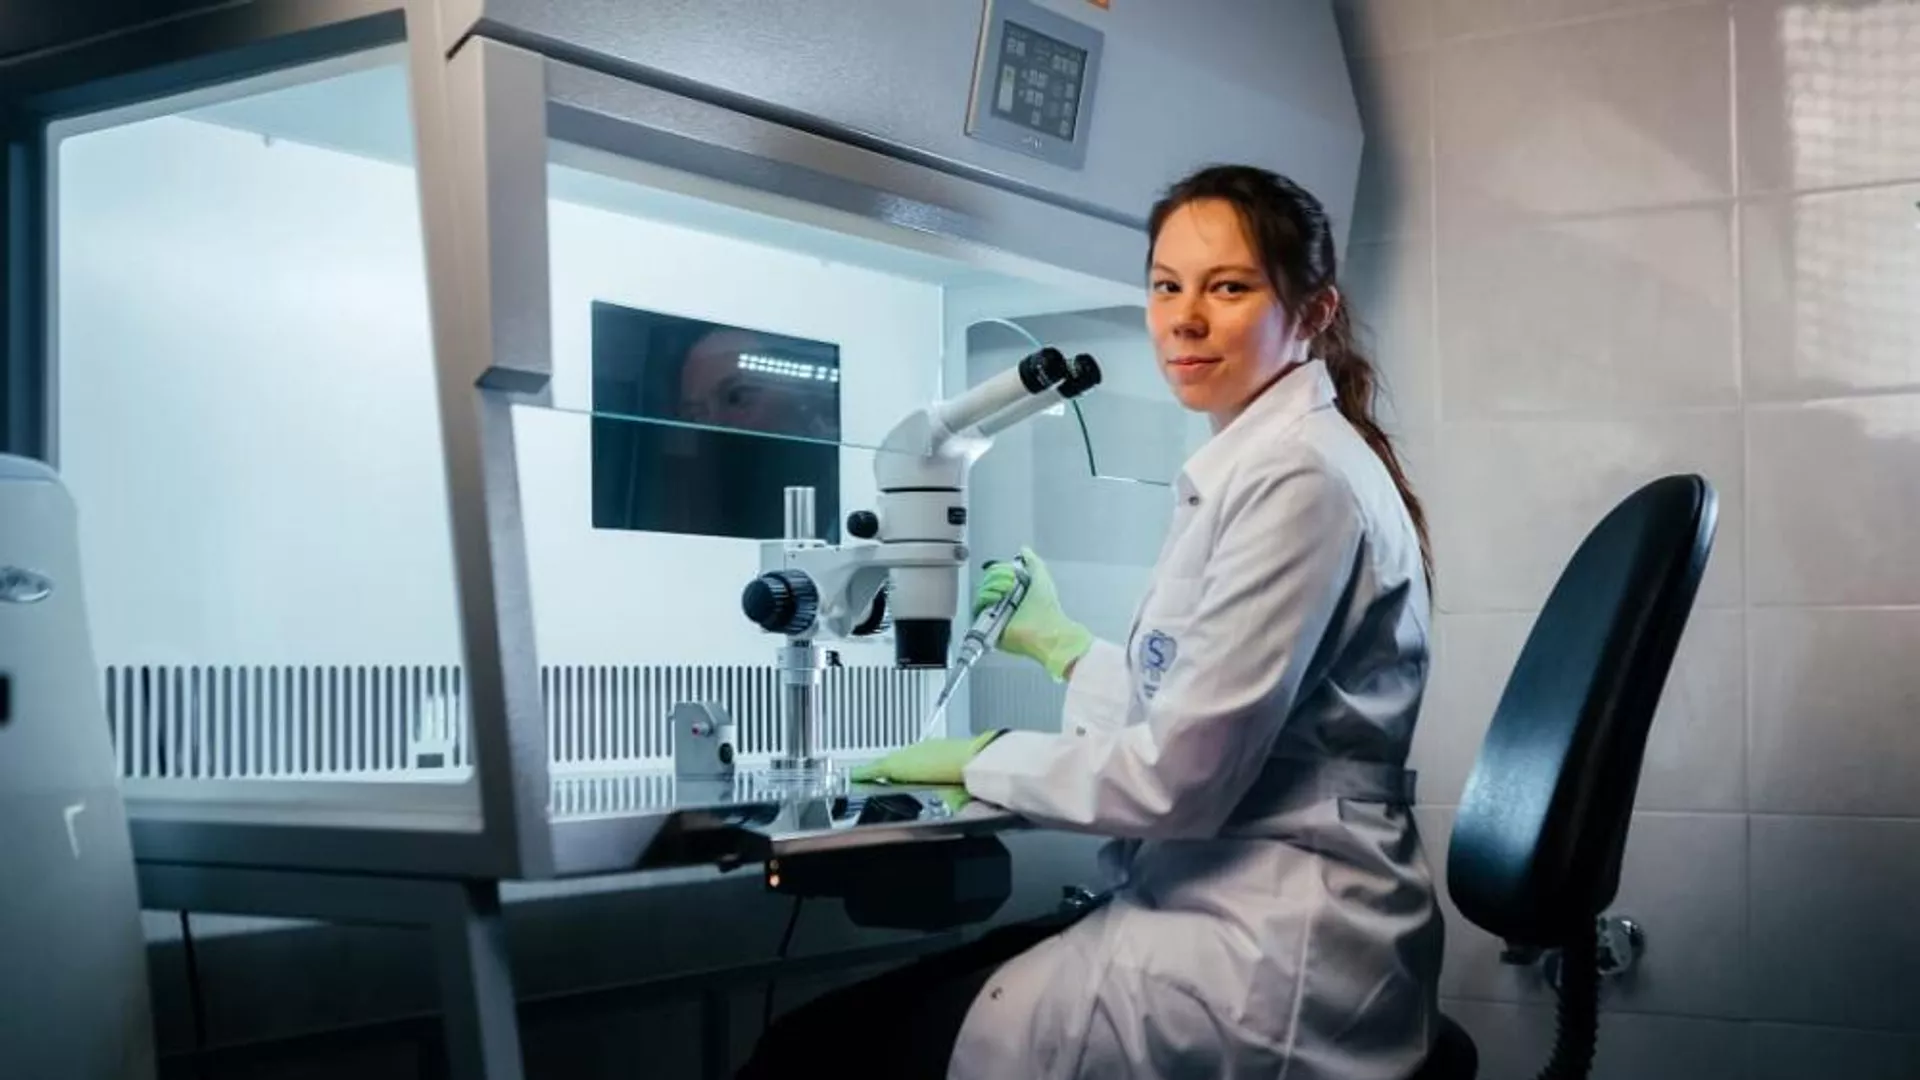 Científicos Rusos lograron crear una tecnología para imprimir en 3D tejido humano a partir de células vivas